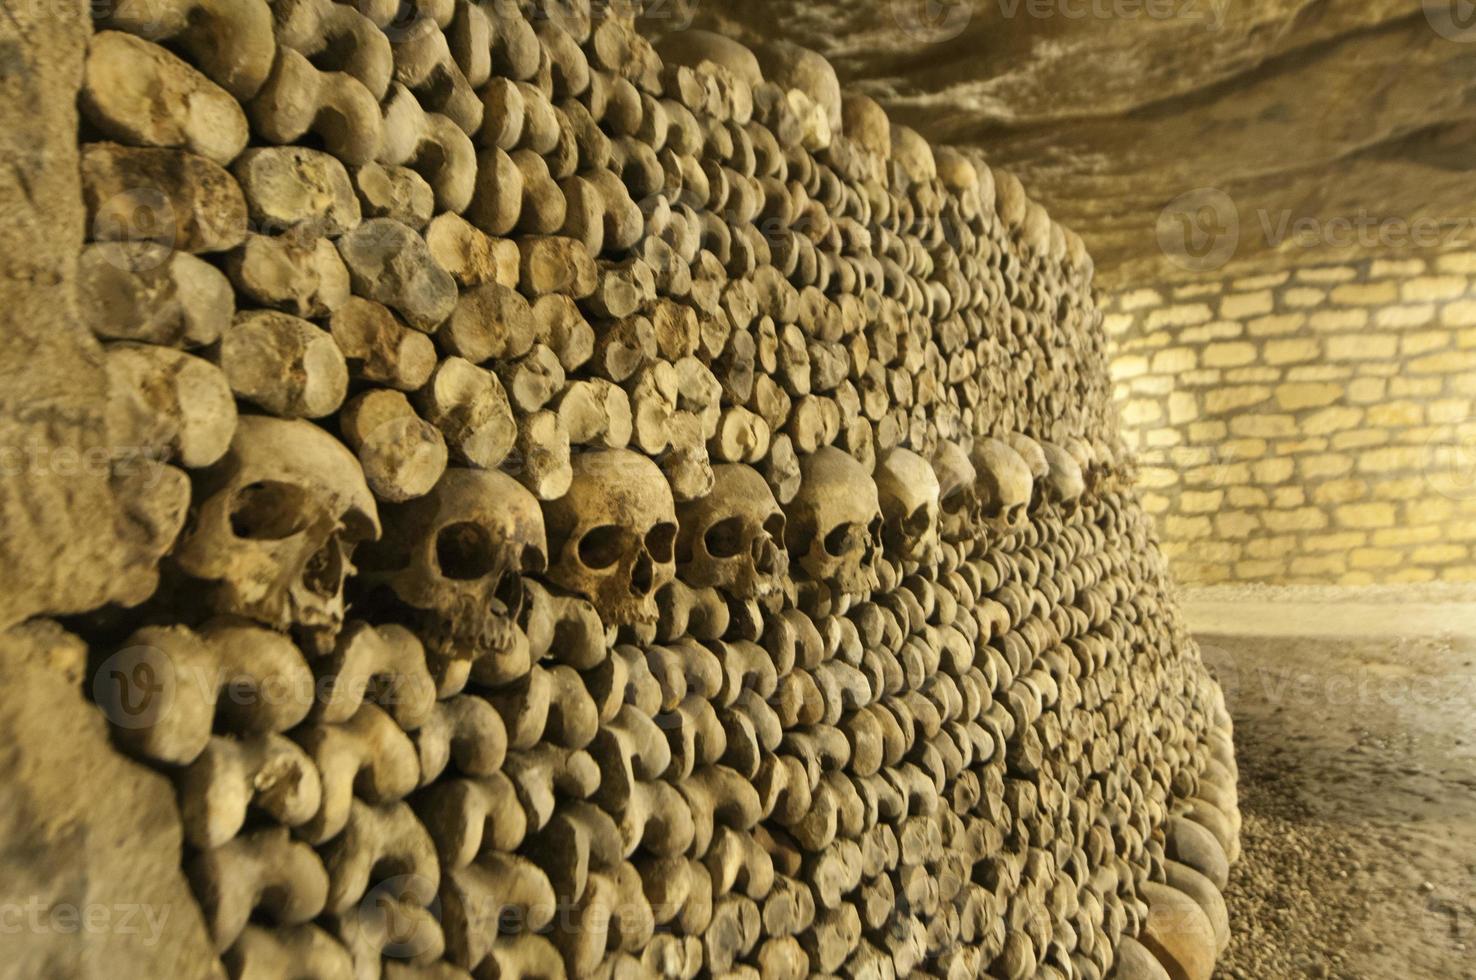 París catacumbas cráneos y huesos foto